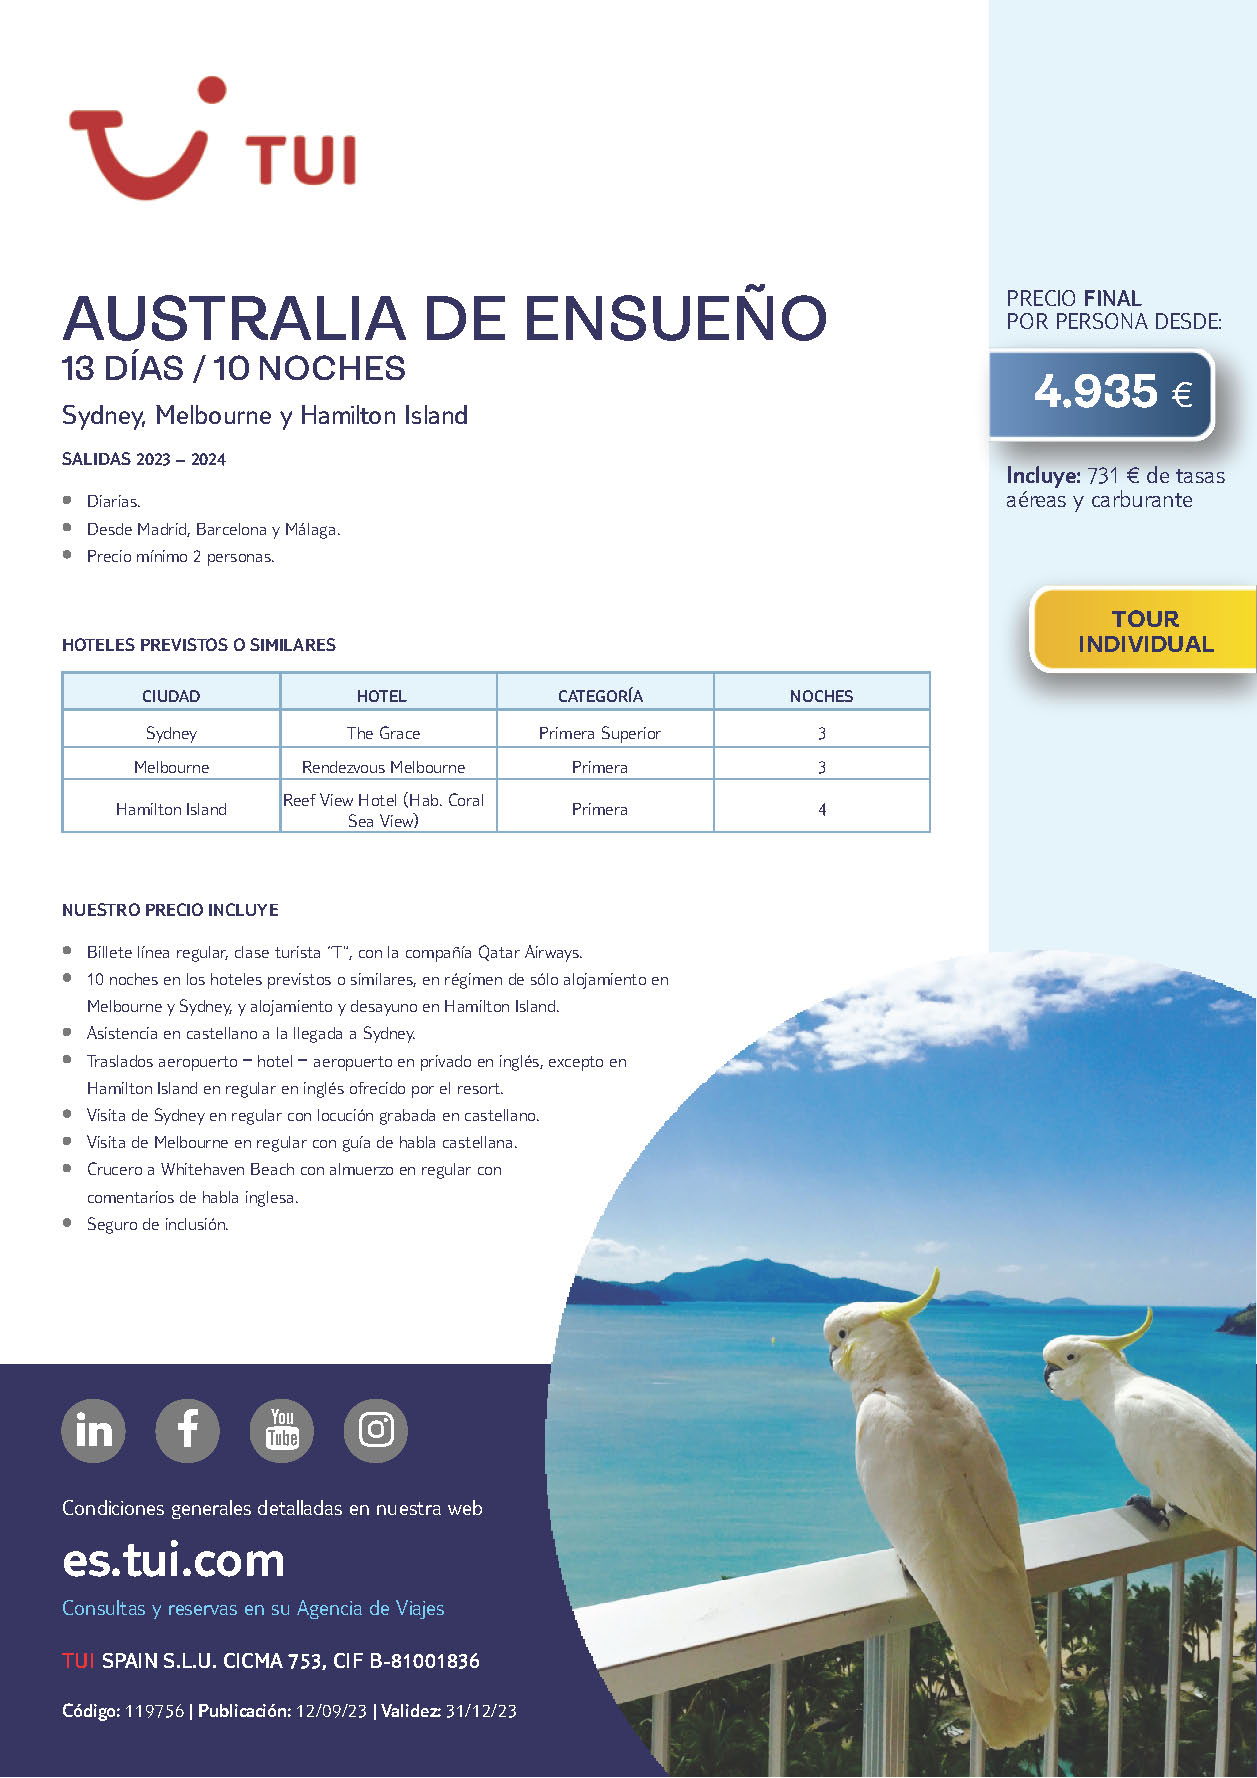 Oferta TUI Australia de Ensueño 13 dias Noviembre 2023 a Marzo 2024 salidas desde Madrid Barcelona Malaga vuelos Qatar Airways